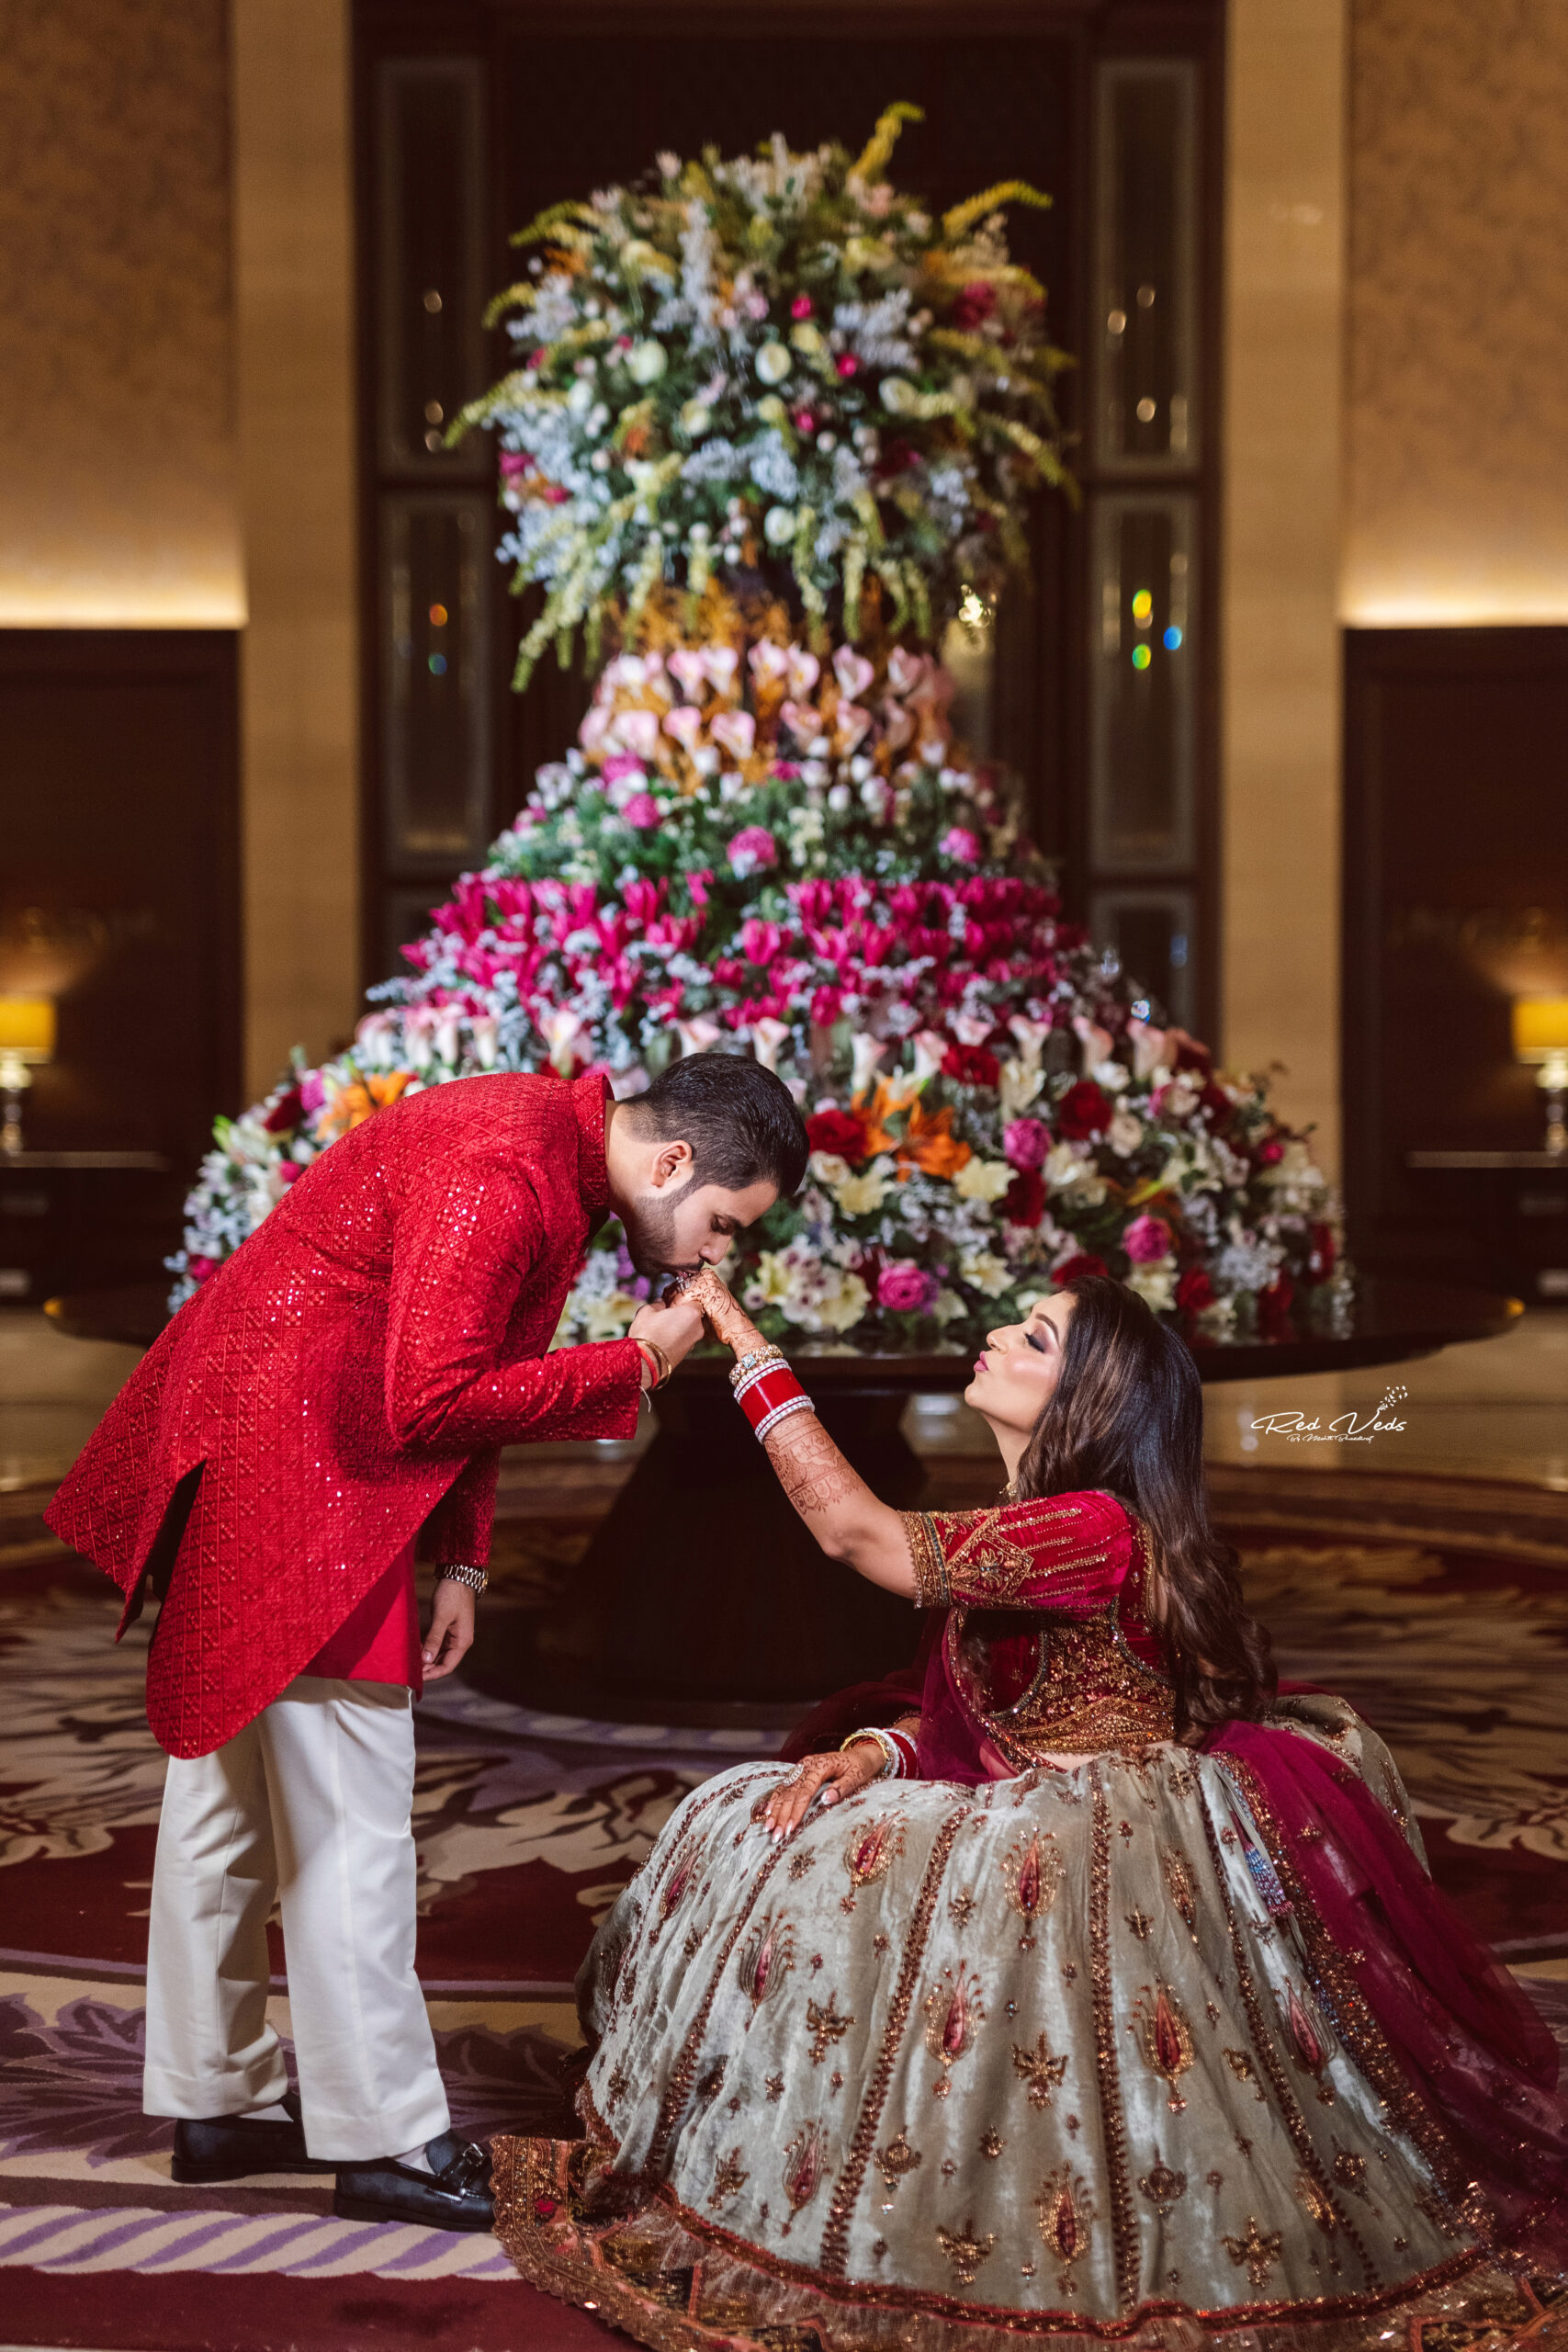 gown#indianbride#instabridal#weddinghair#weddingmakeup#weddingparty |  Indian bride photography poses, Indian wedding poses, Indian bride poses